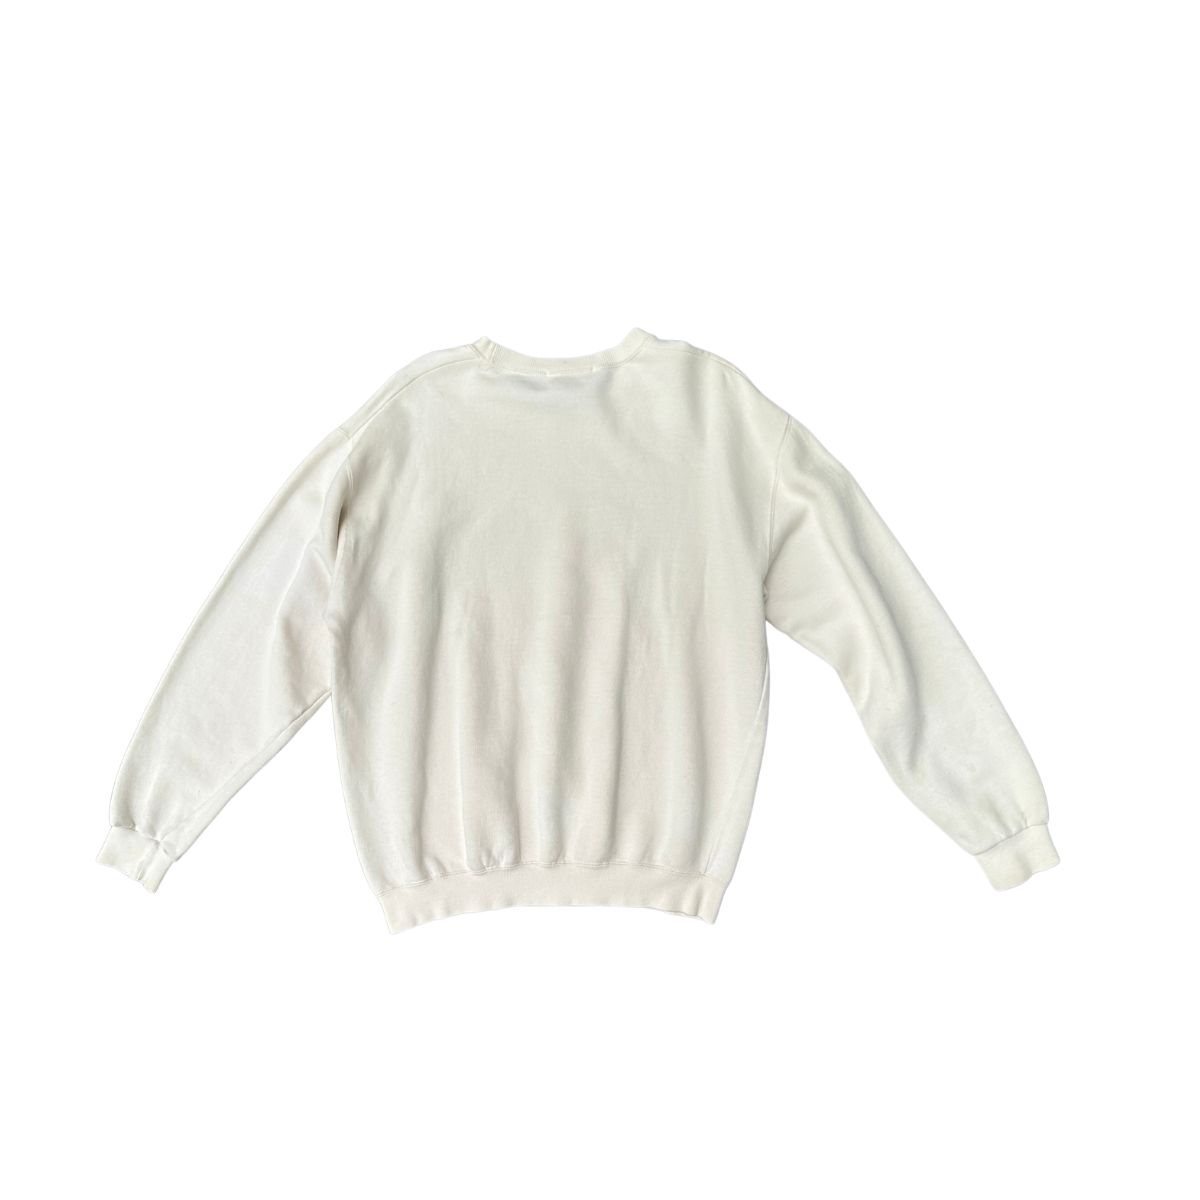 Fendi Fendi Flerfarvet sweaterstof - Tøj - Etoile Luxury Vintage